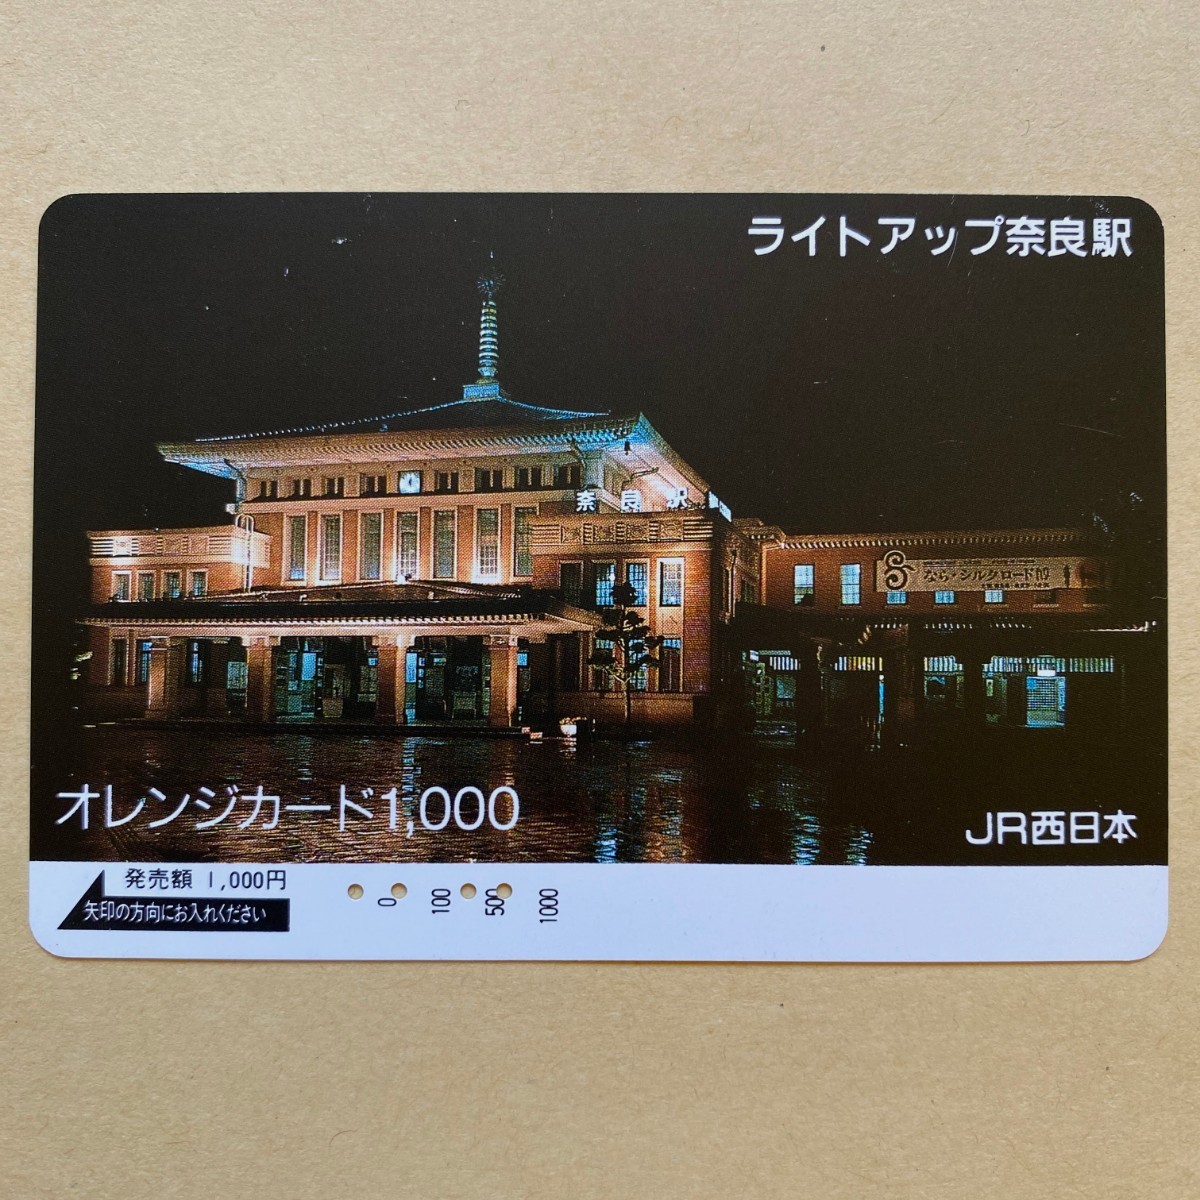 【使用済】 オレンジカード JR西日本 ライトアップ 奈良駅_画像1